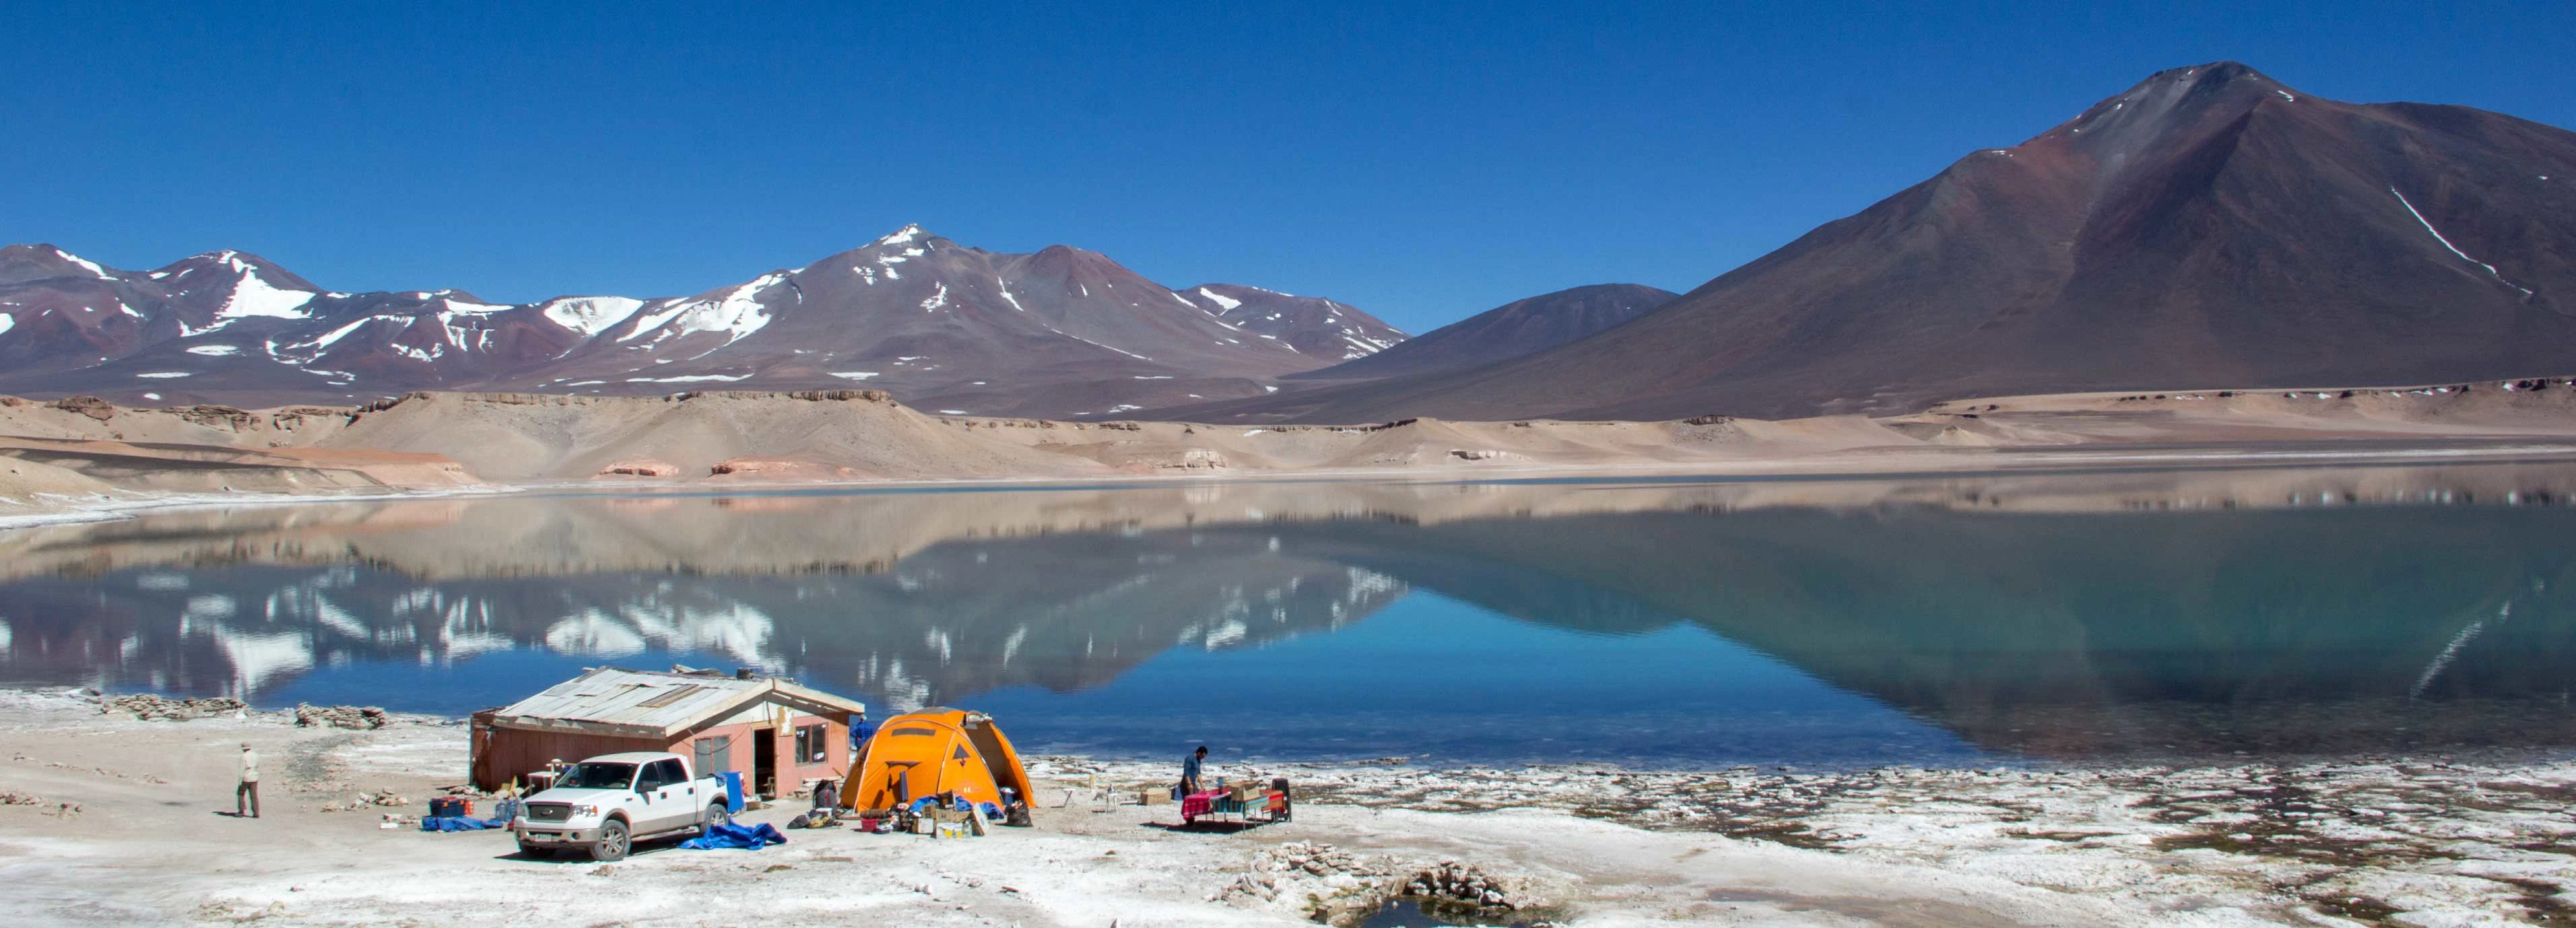 campamento base cerca de una laguna en el altiplano